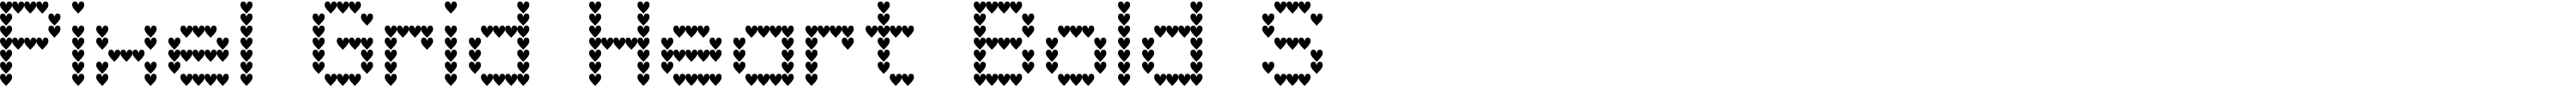 Pixel Grid Heart Bold S